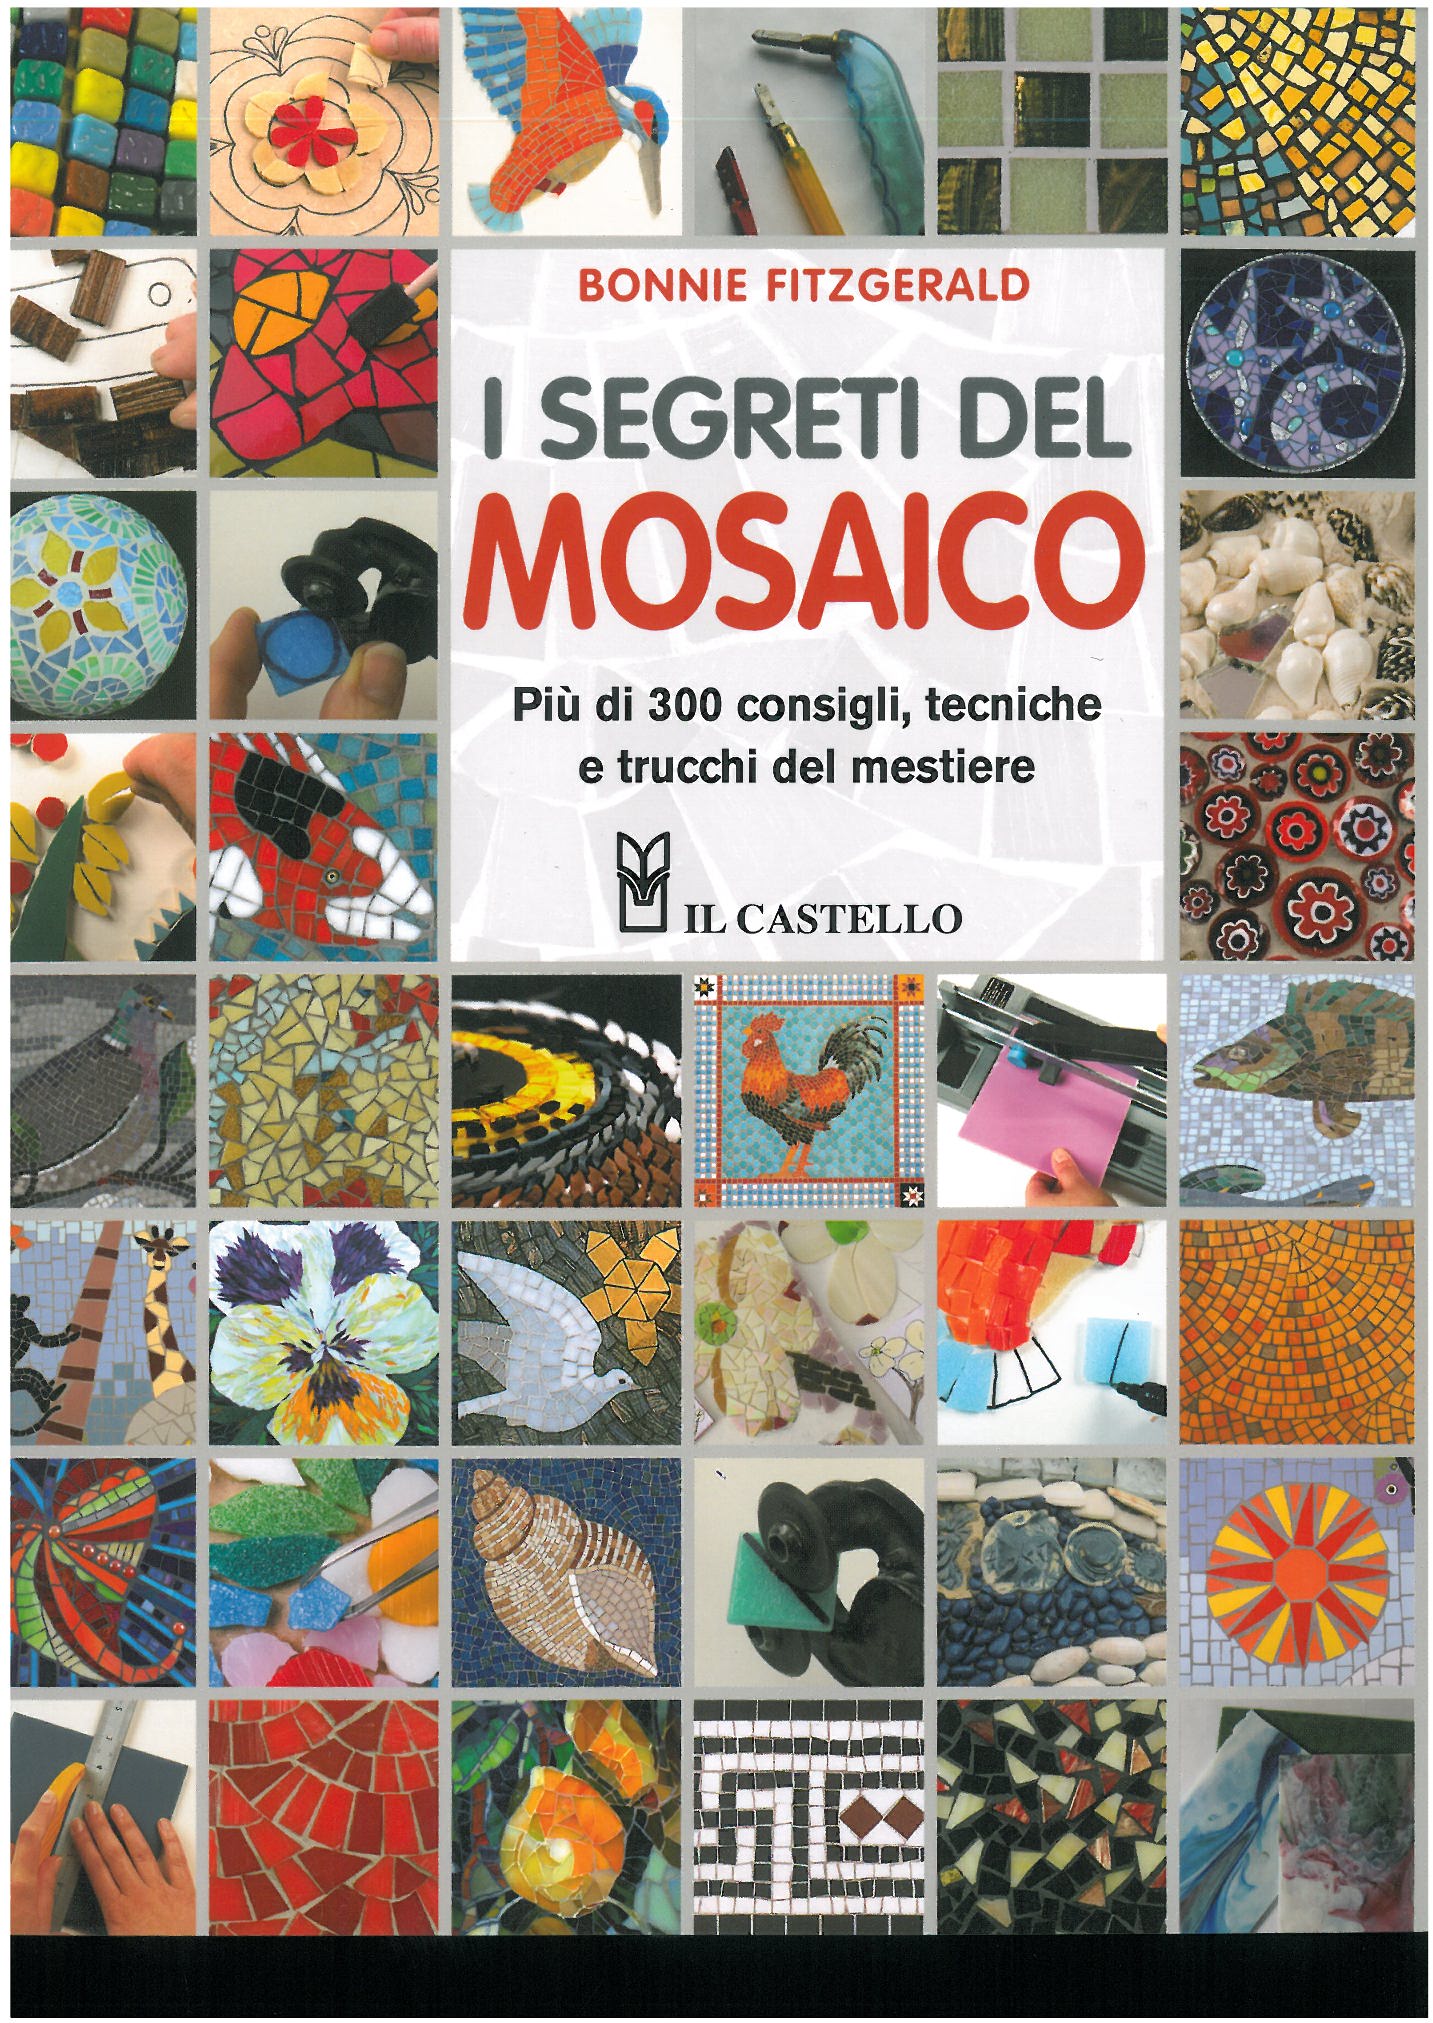 I SEGRETI DEL MOSAICO (Secrets od Mosaics)